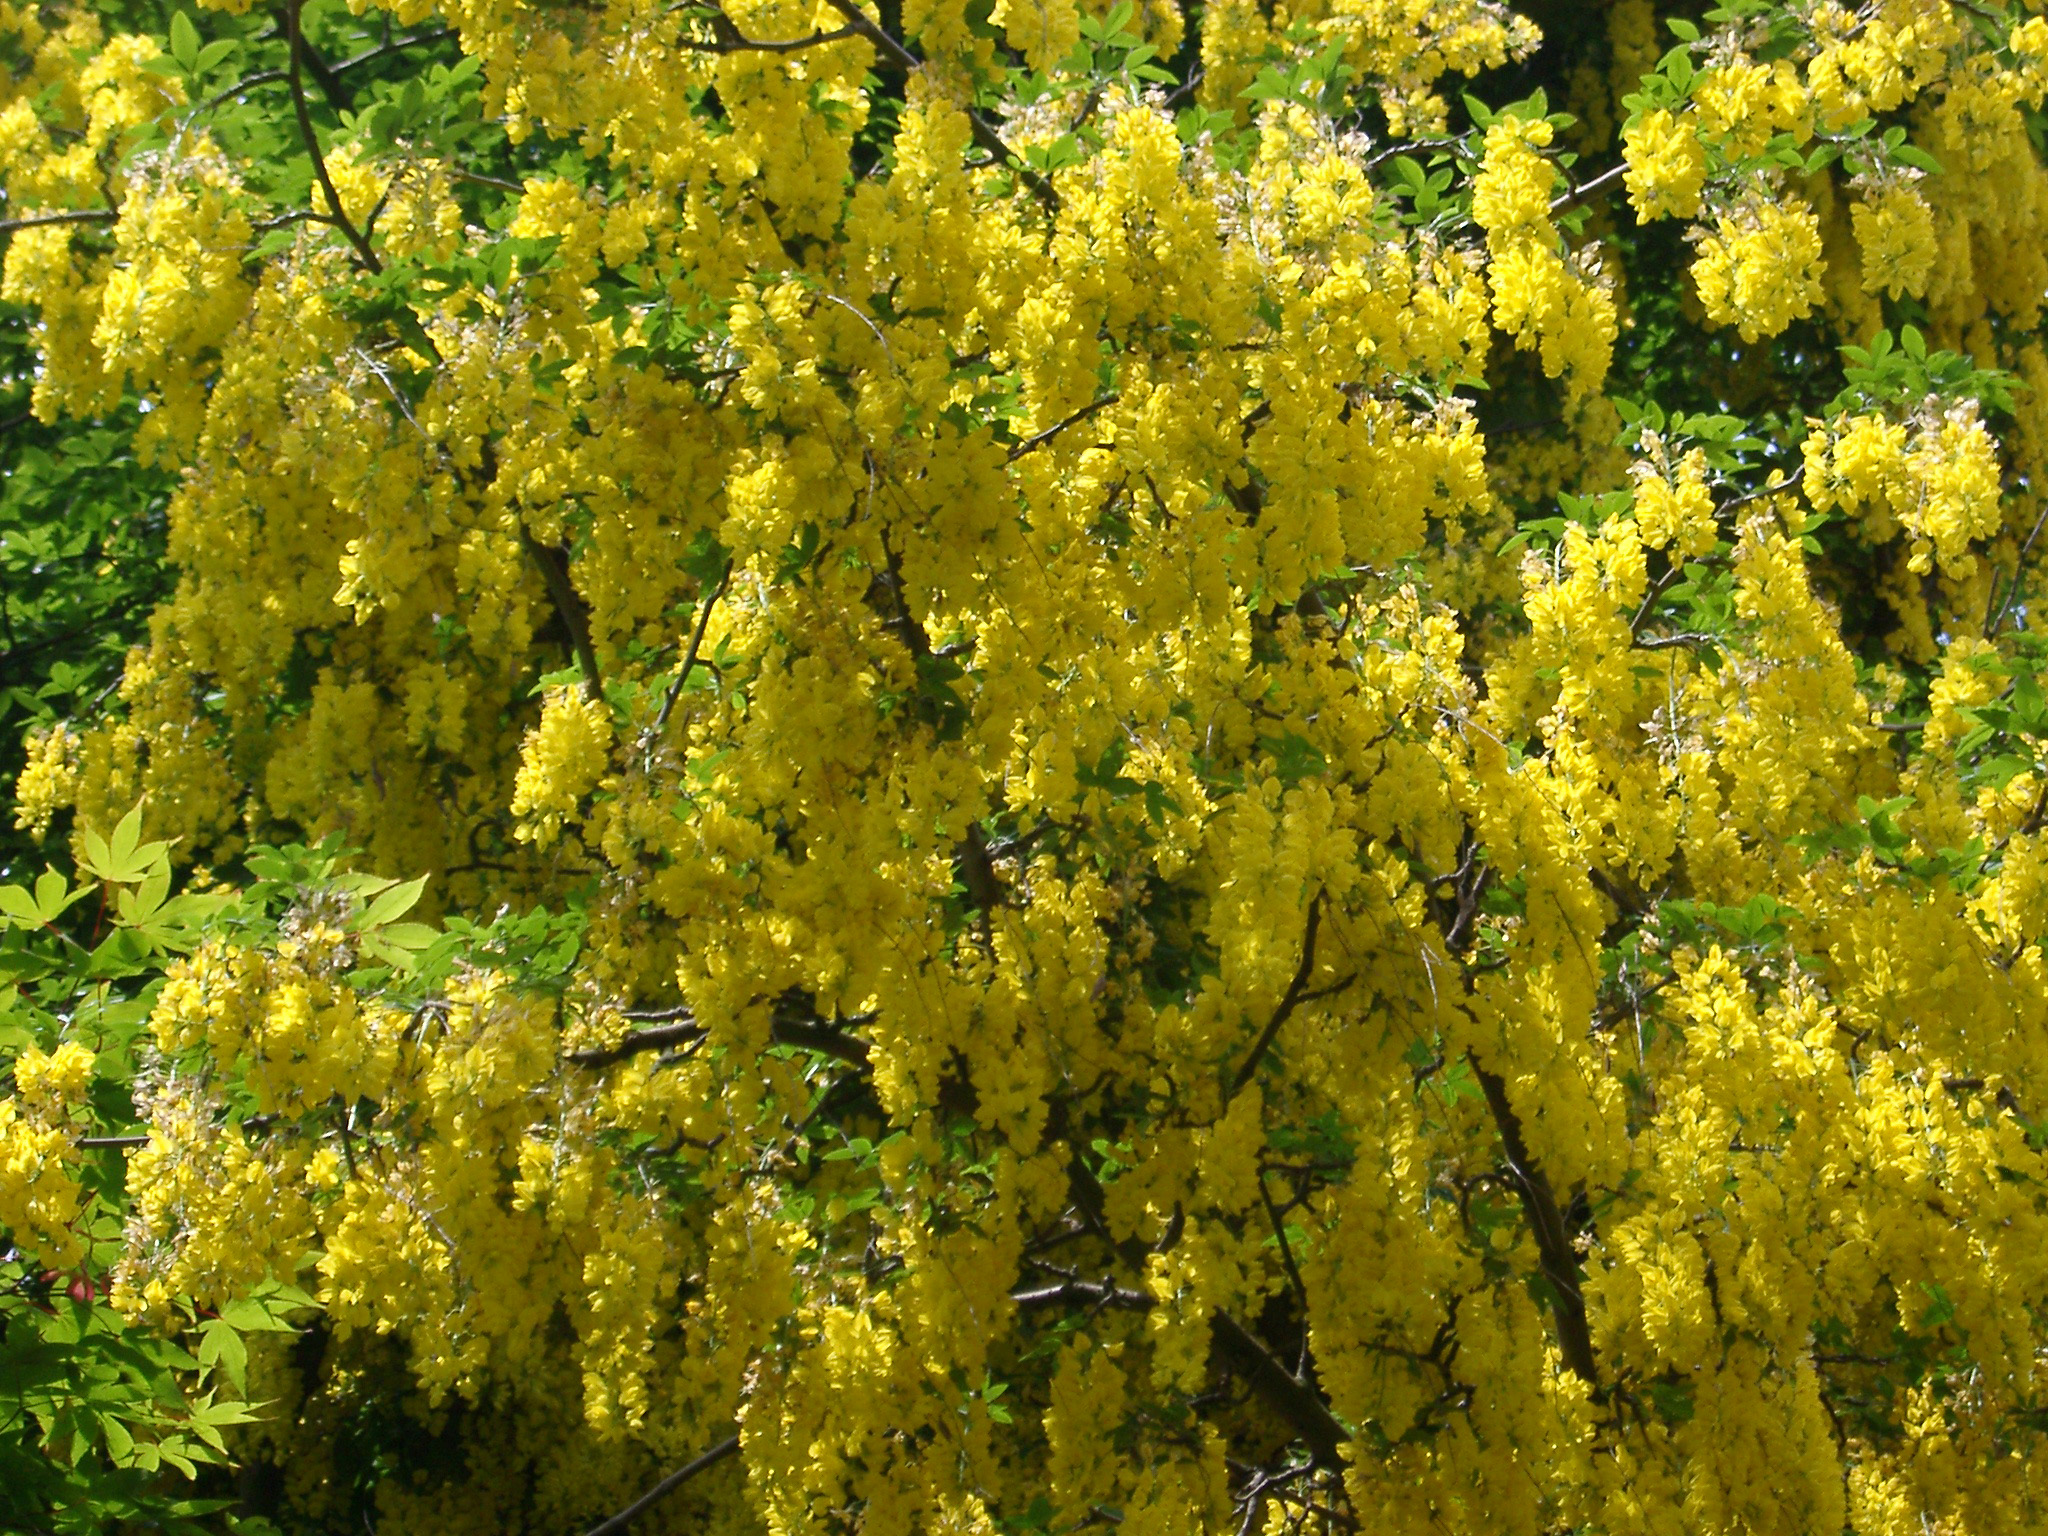 Free Stock photo of Yellow laburnum tree in flower | Photoeverywhere